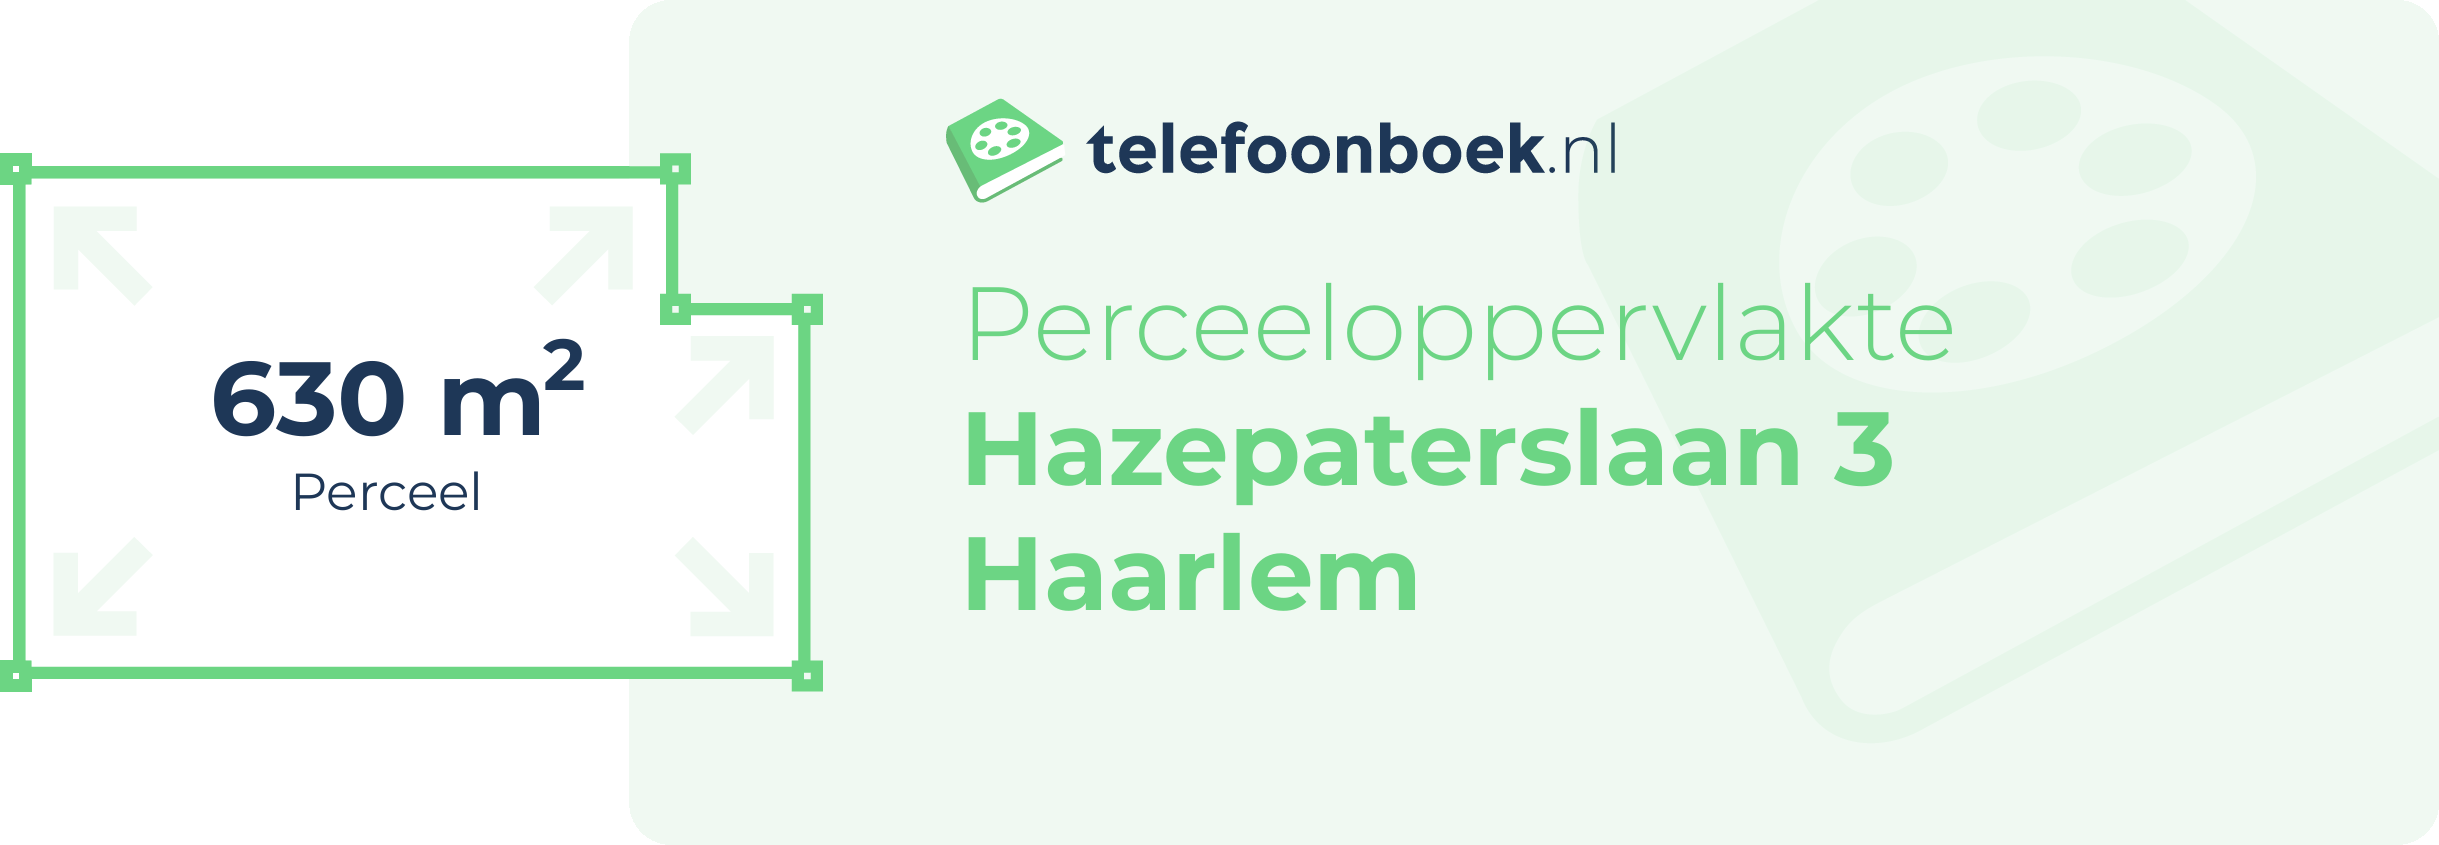 Perceeloppervlakte Hazepaterslaan 3 Haarlem